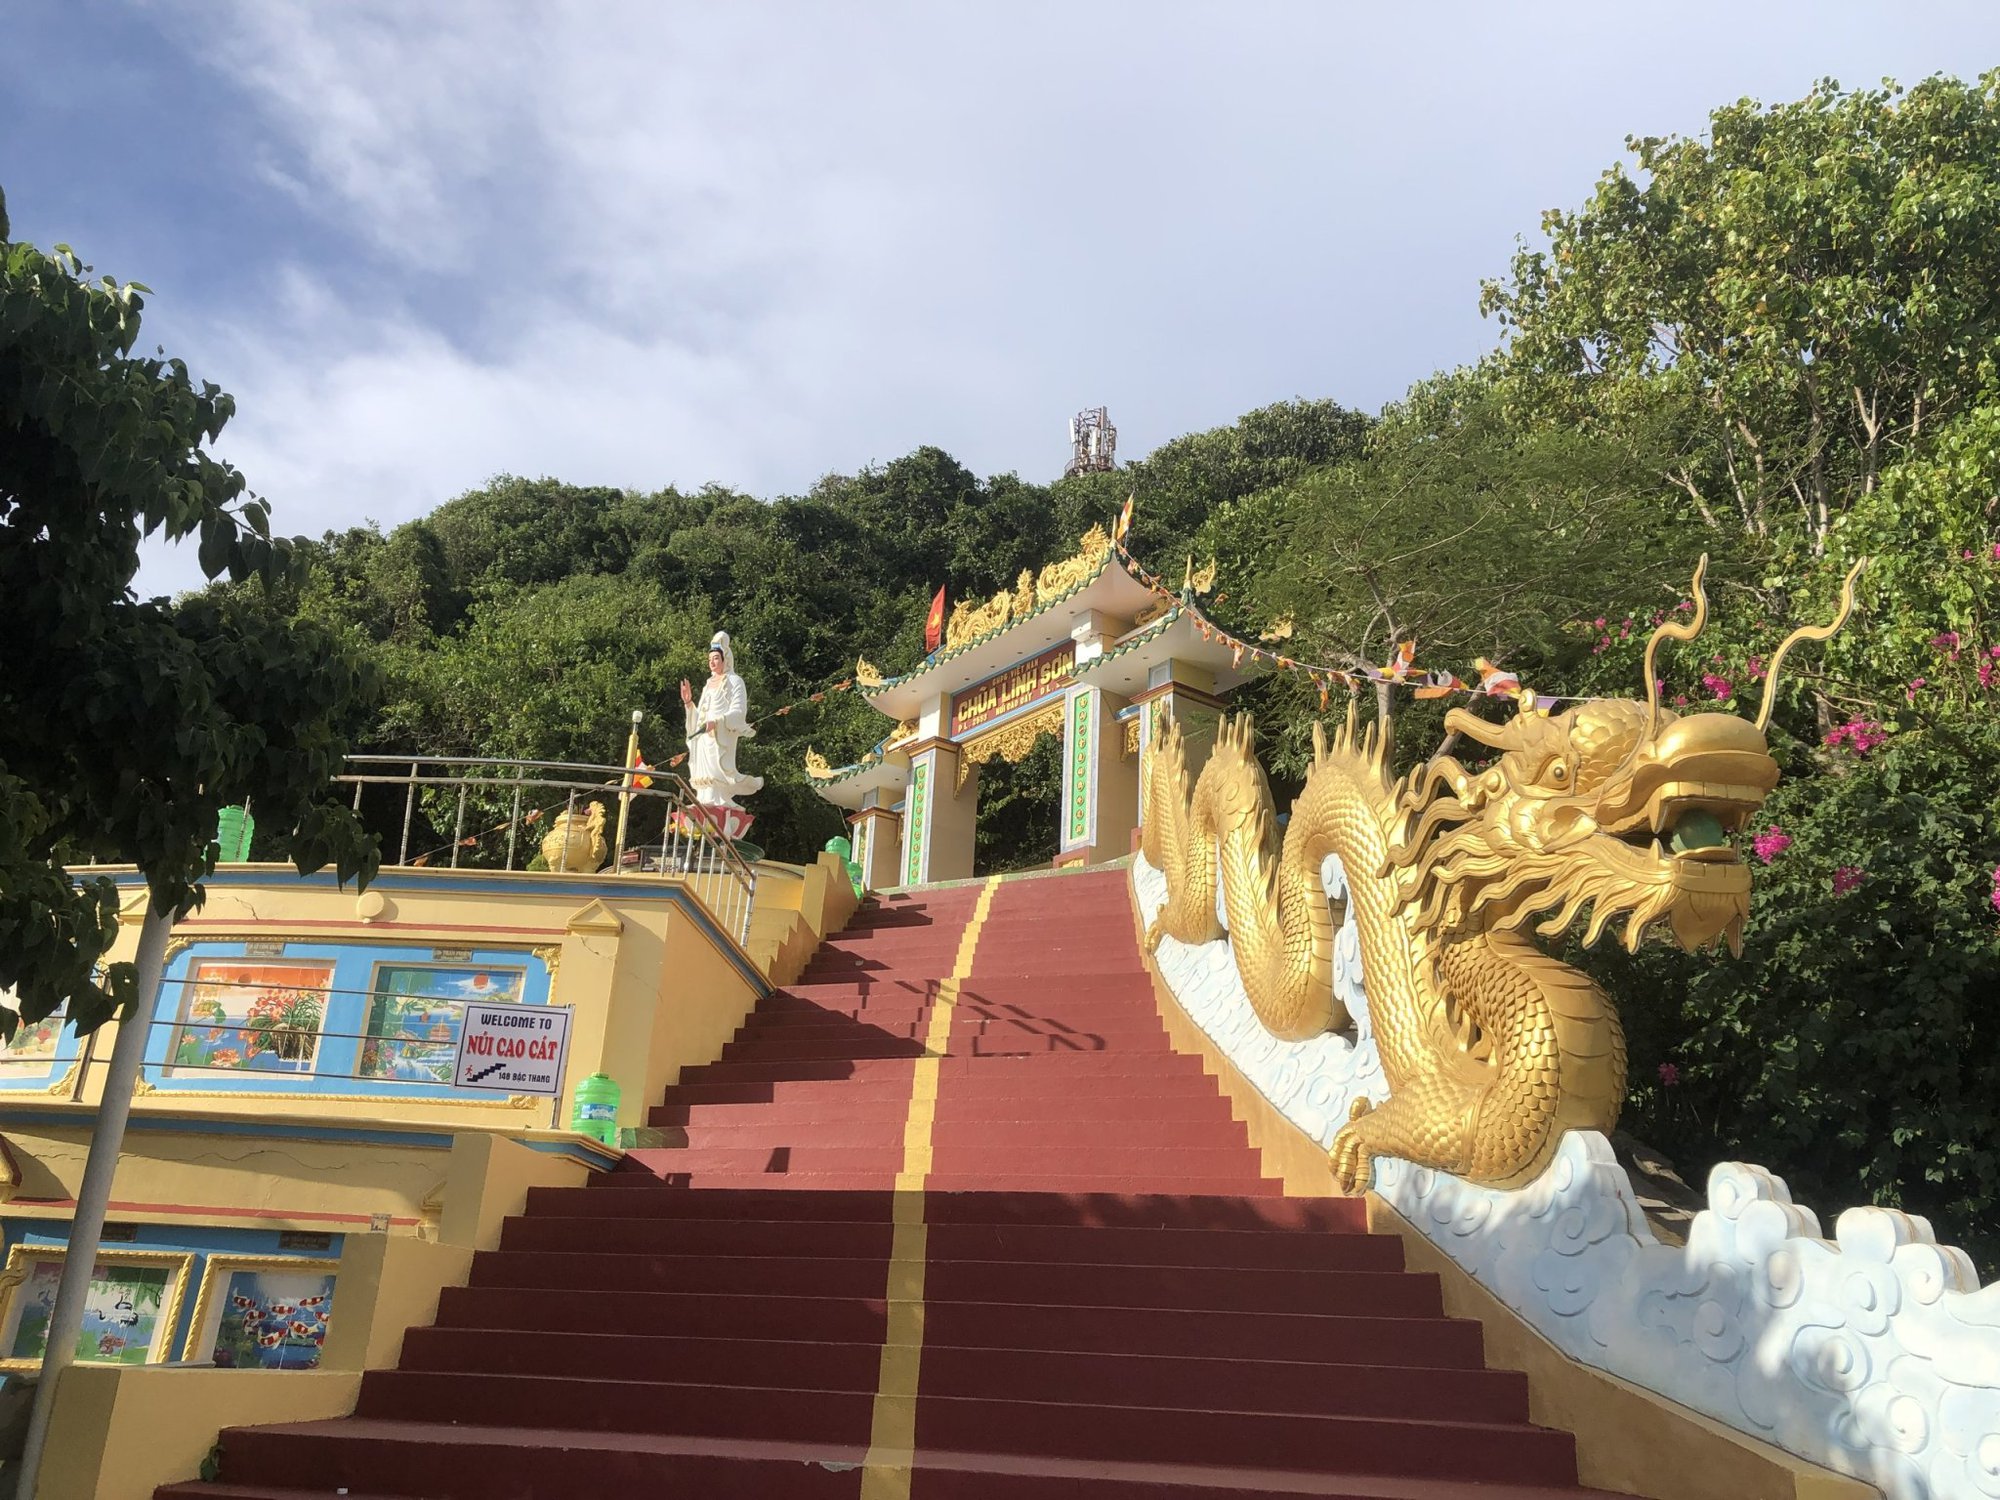 Chùa Linh Sơn trên núi Cao Cát, nơi du lịch tâm linh giữa biển khơi trên đảo Phú Quý tỉnh Bình Thuận - Ảnh 3.